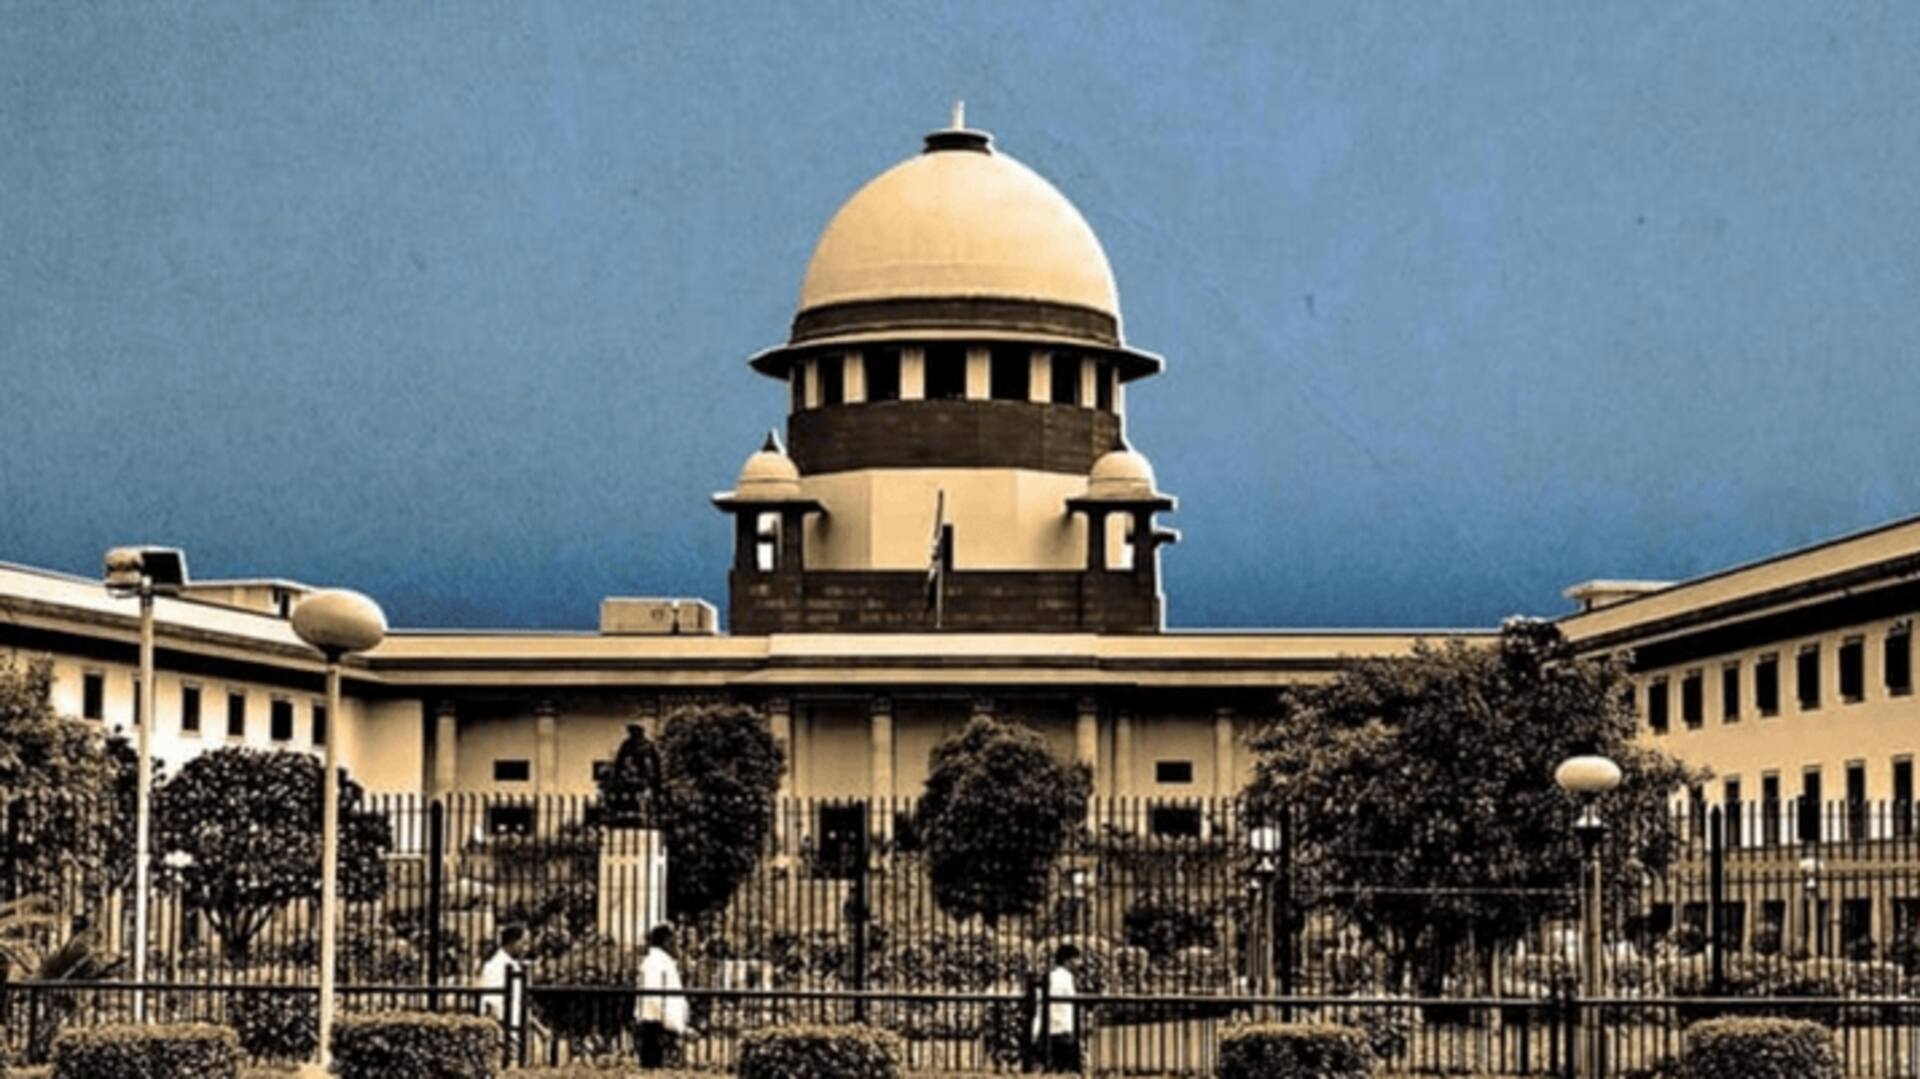 मणिपुर हिंसा: सुप्रीम कोर्ट ने CBI को असम में सुनवाई की अनुमति दी, जानें अन्य अहम दिशा-निर्देश